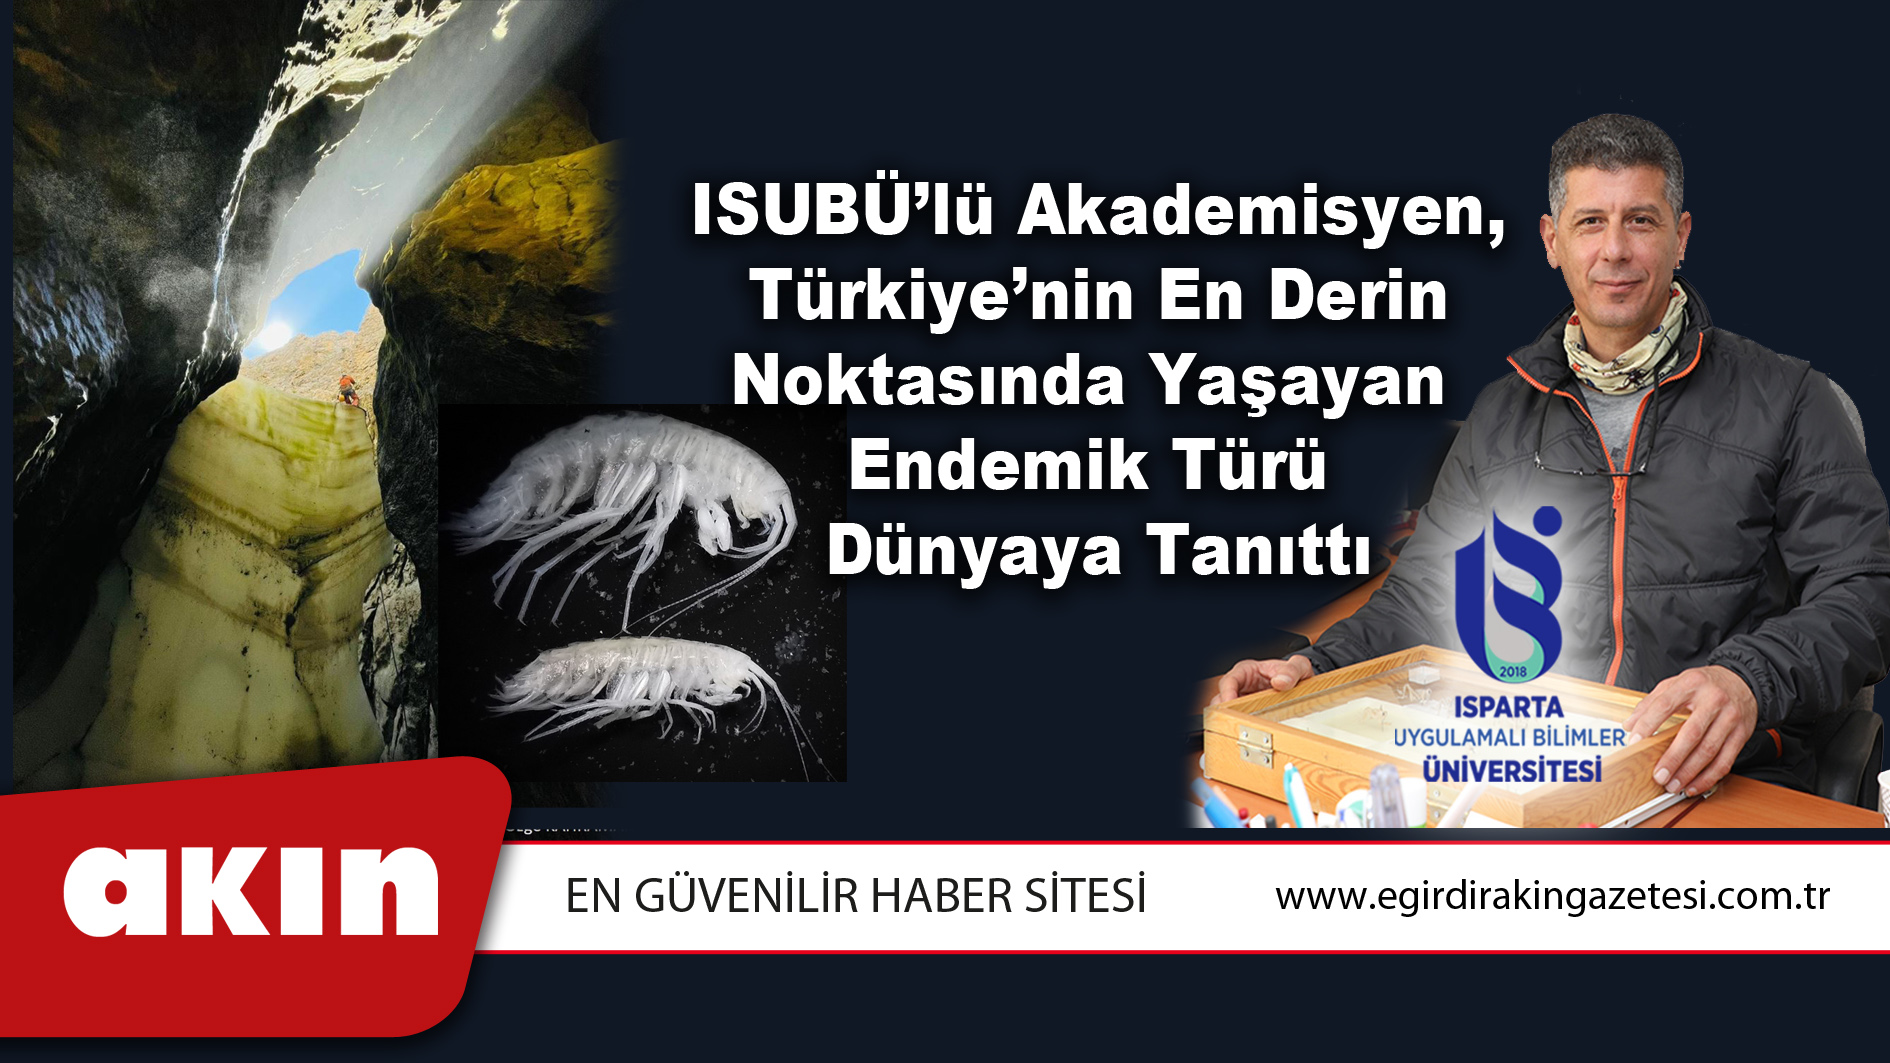 eğirdir haber,akın gazetesi,egirdir haberler,son dakika,ISUBÜ’lü Akademisyen, Türkiye’nin En Derin Noktasında Yaşayan Endemik Türü Dünyaya Tanıttı